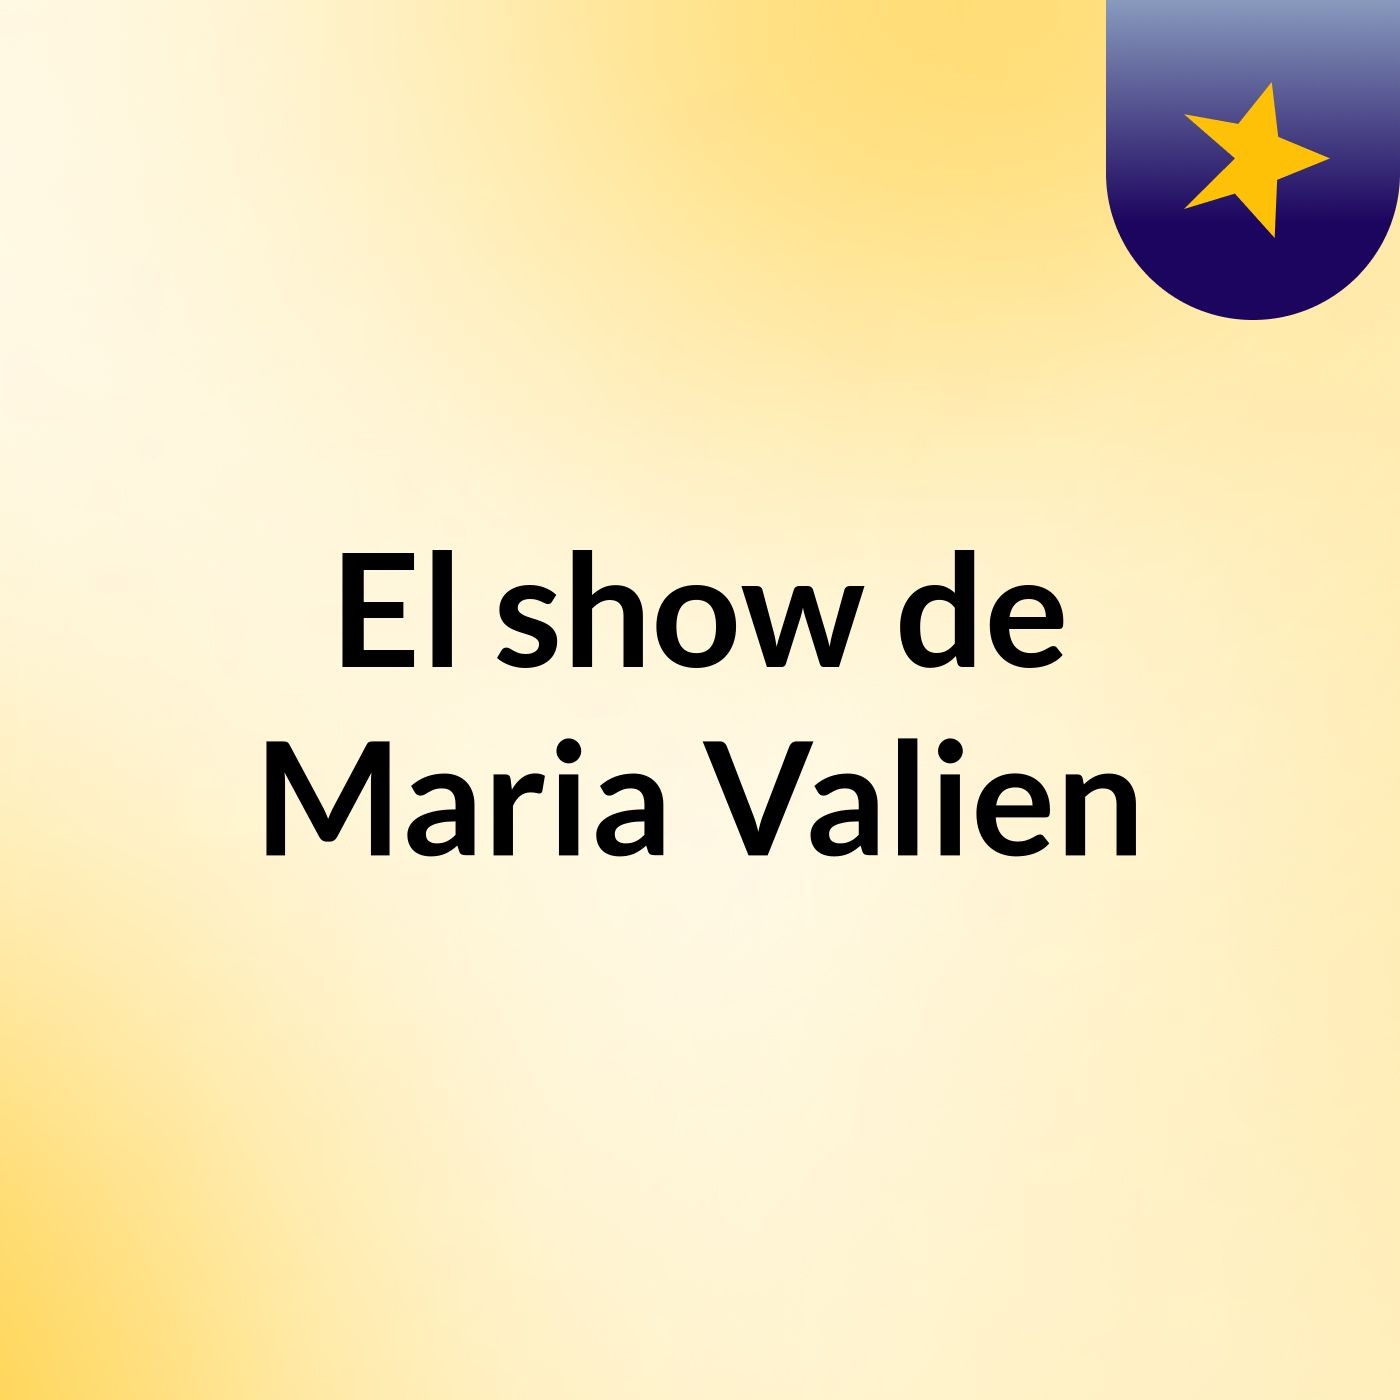 El show de Maria Valien